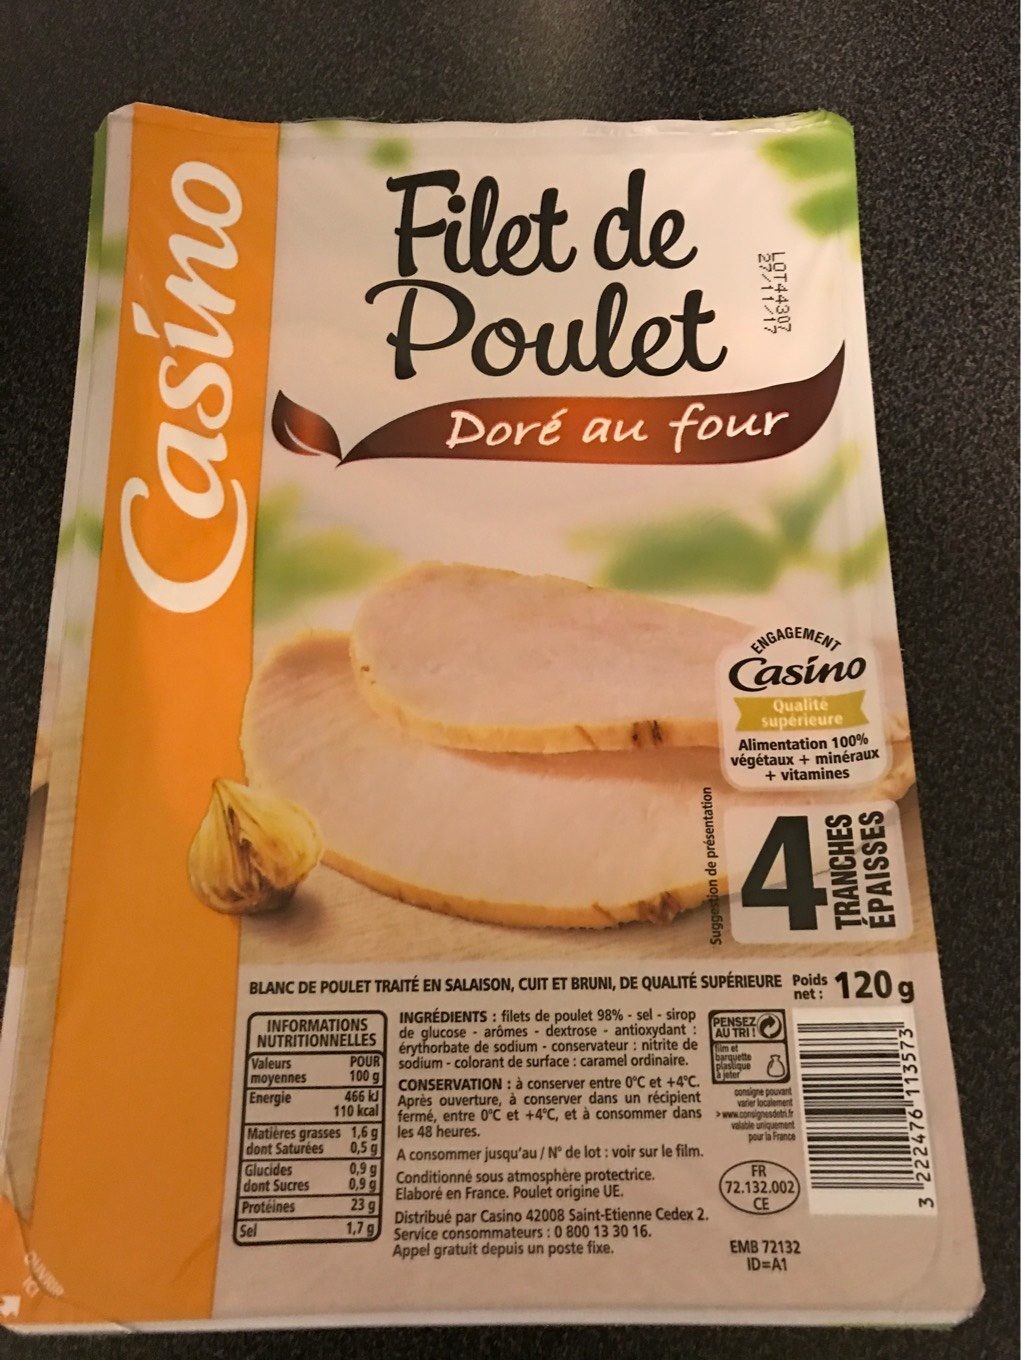 Filet de poulet doré au four - Product - fr